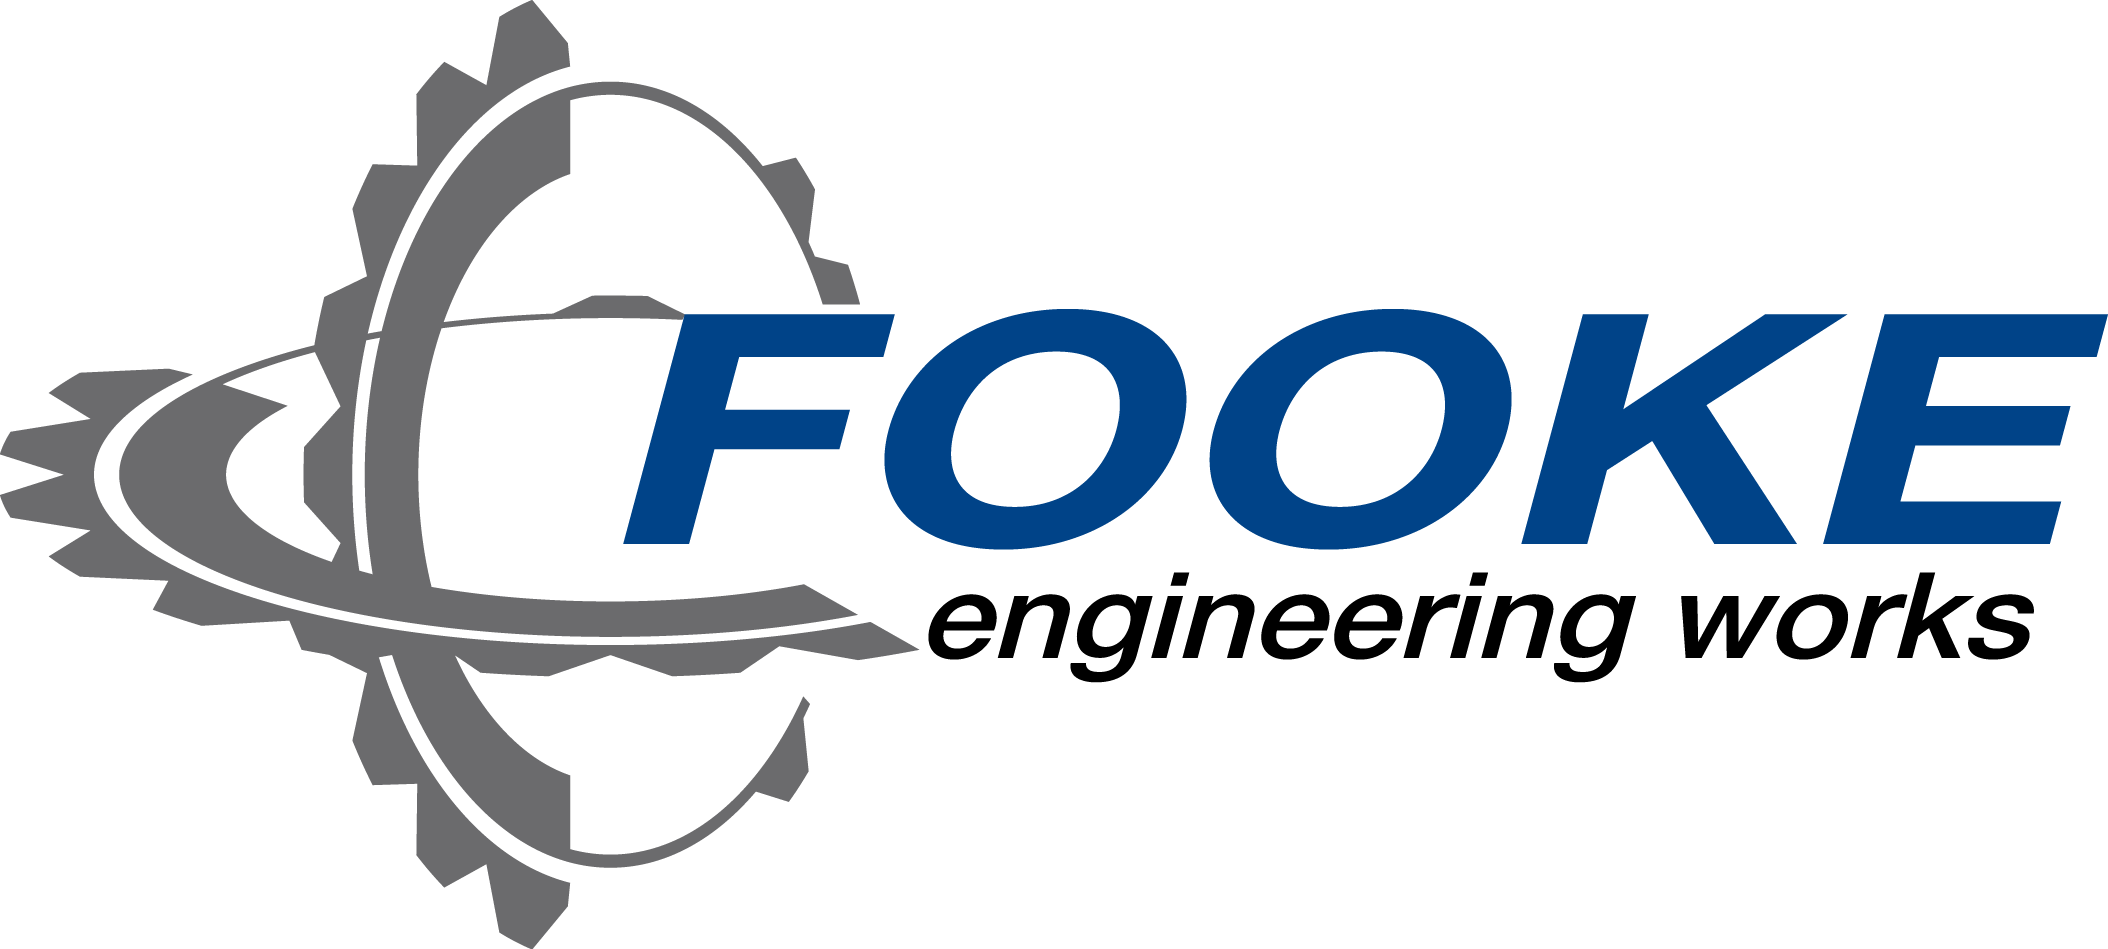 Das Firmenlogo der FOOKE GmbH in den Farben Blau, Hellgrau und Dunkelgrau.